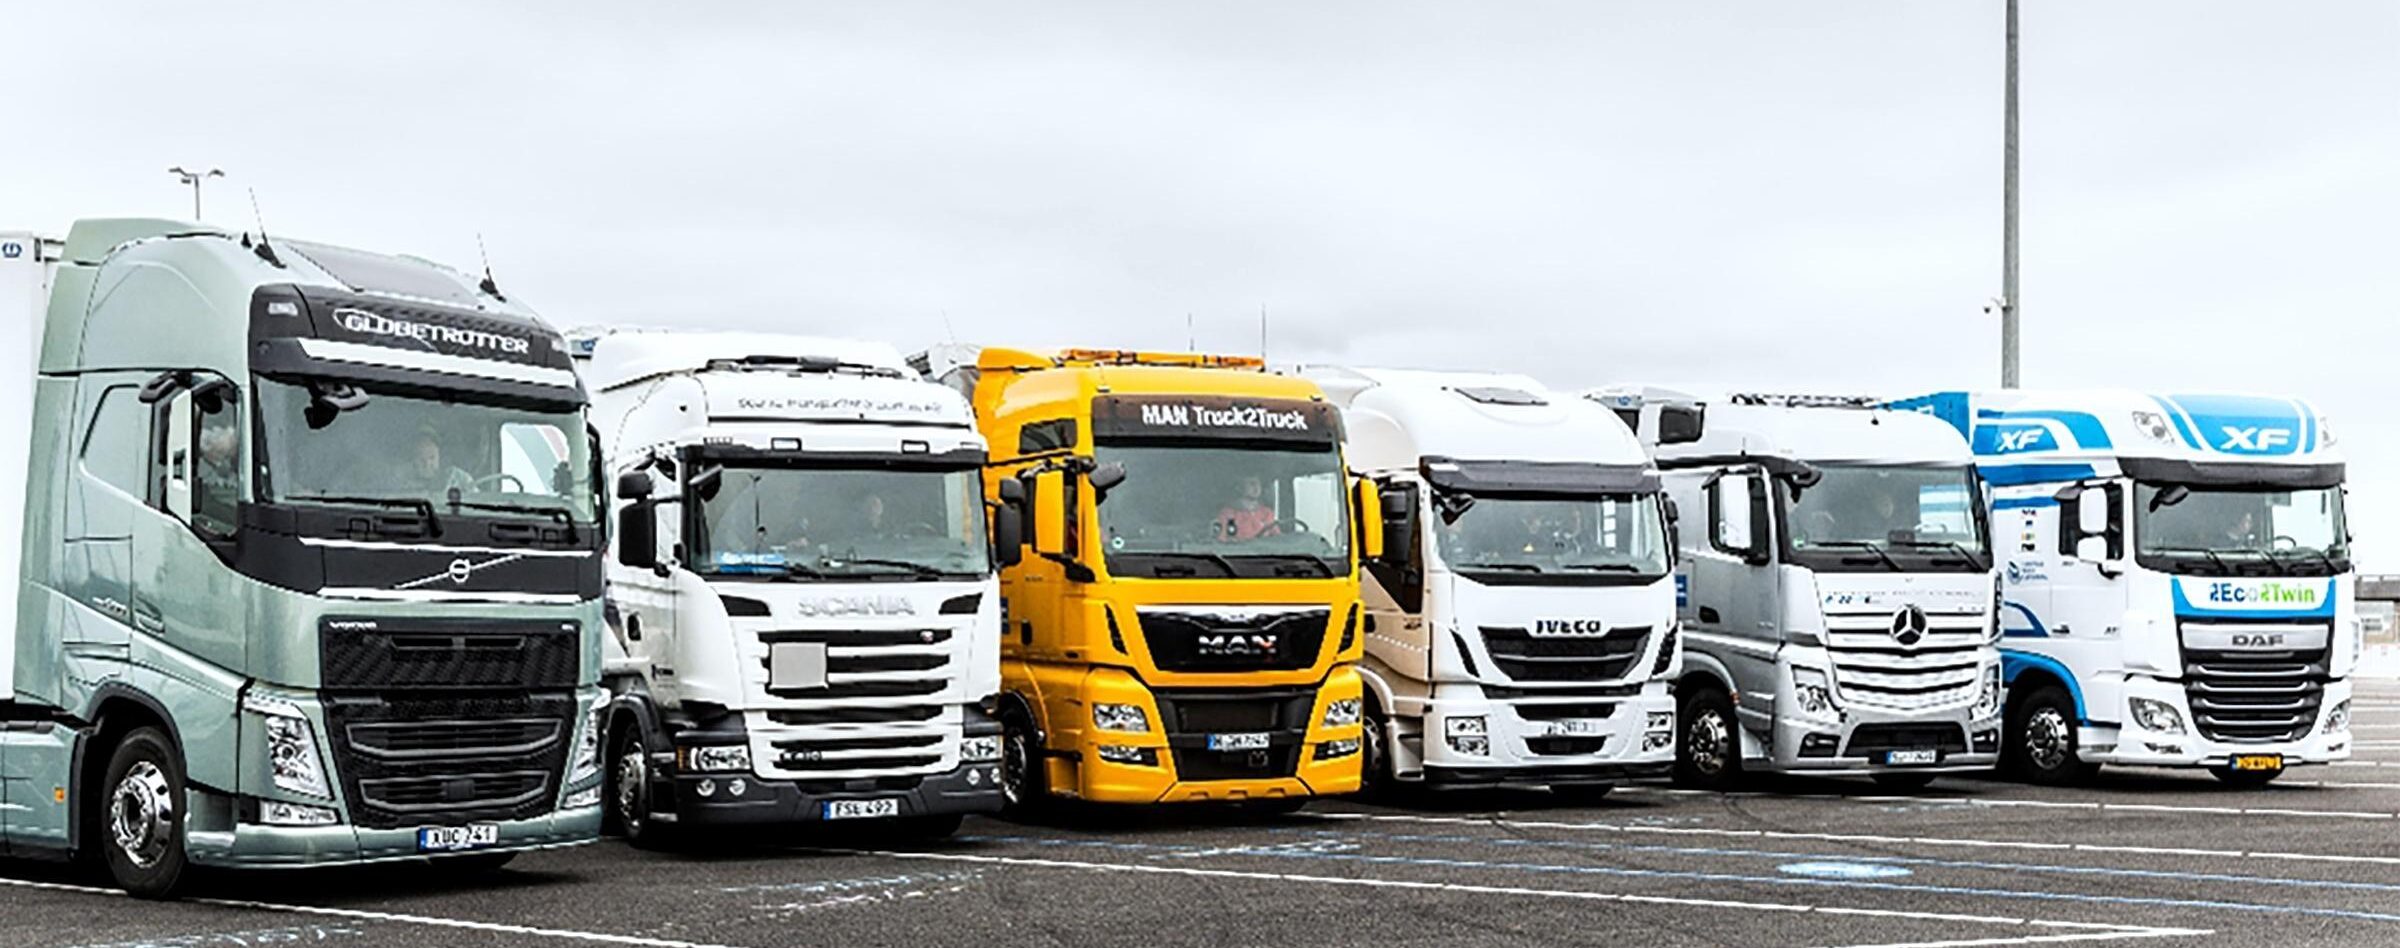 european trucks